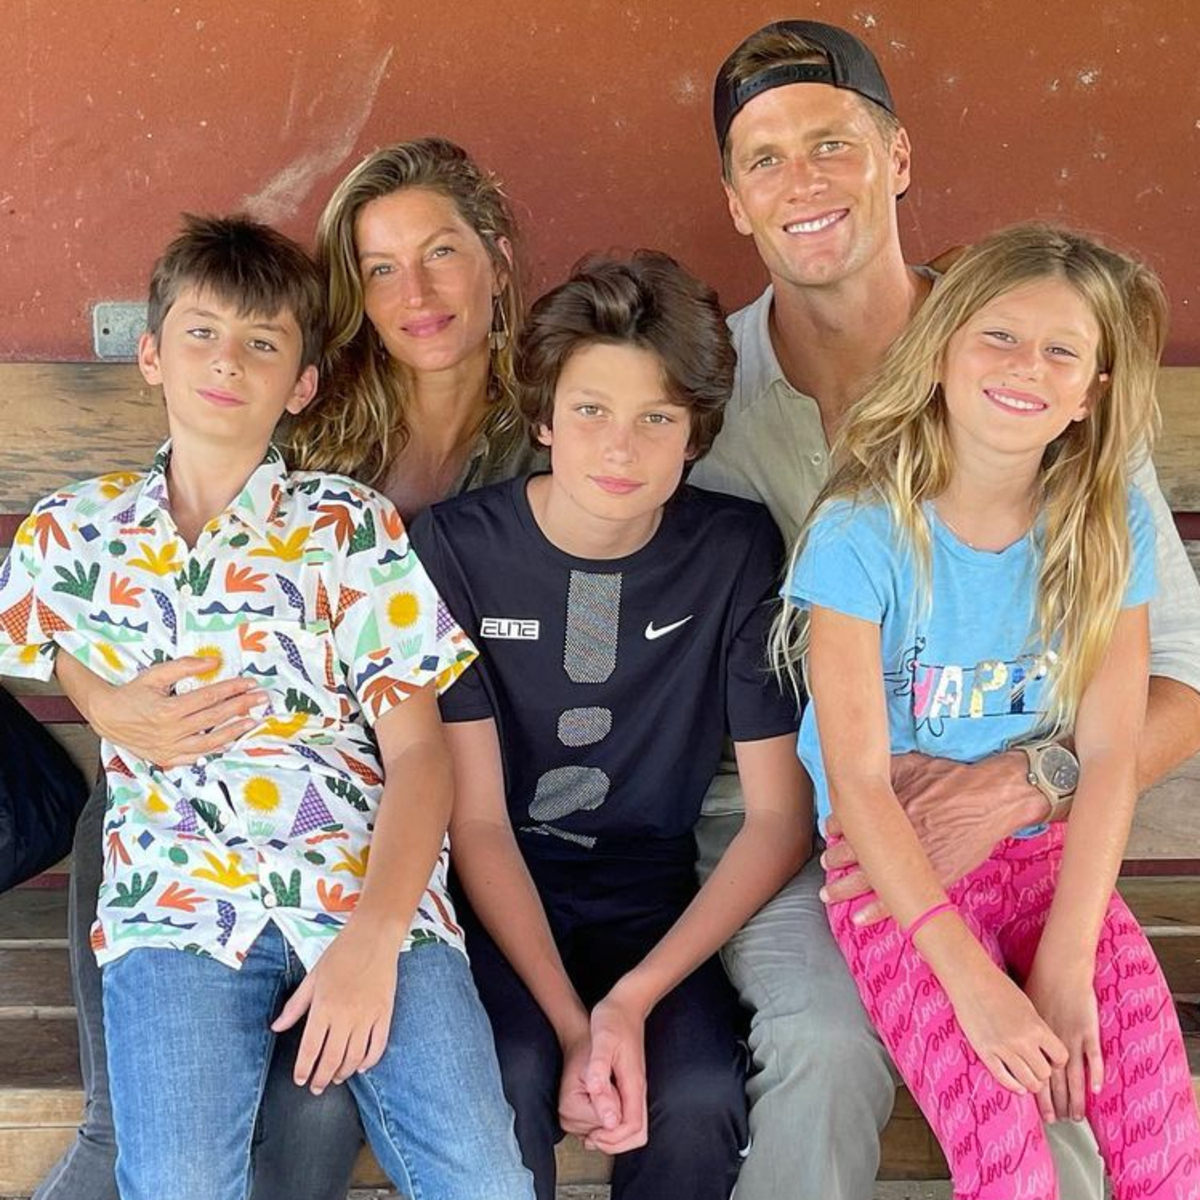 Tom Brady shares rare family photo with ex Bridget Moynahan and